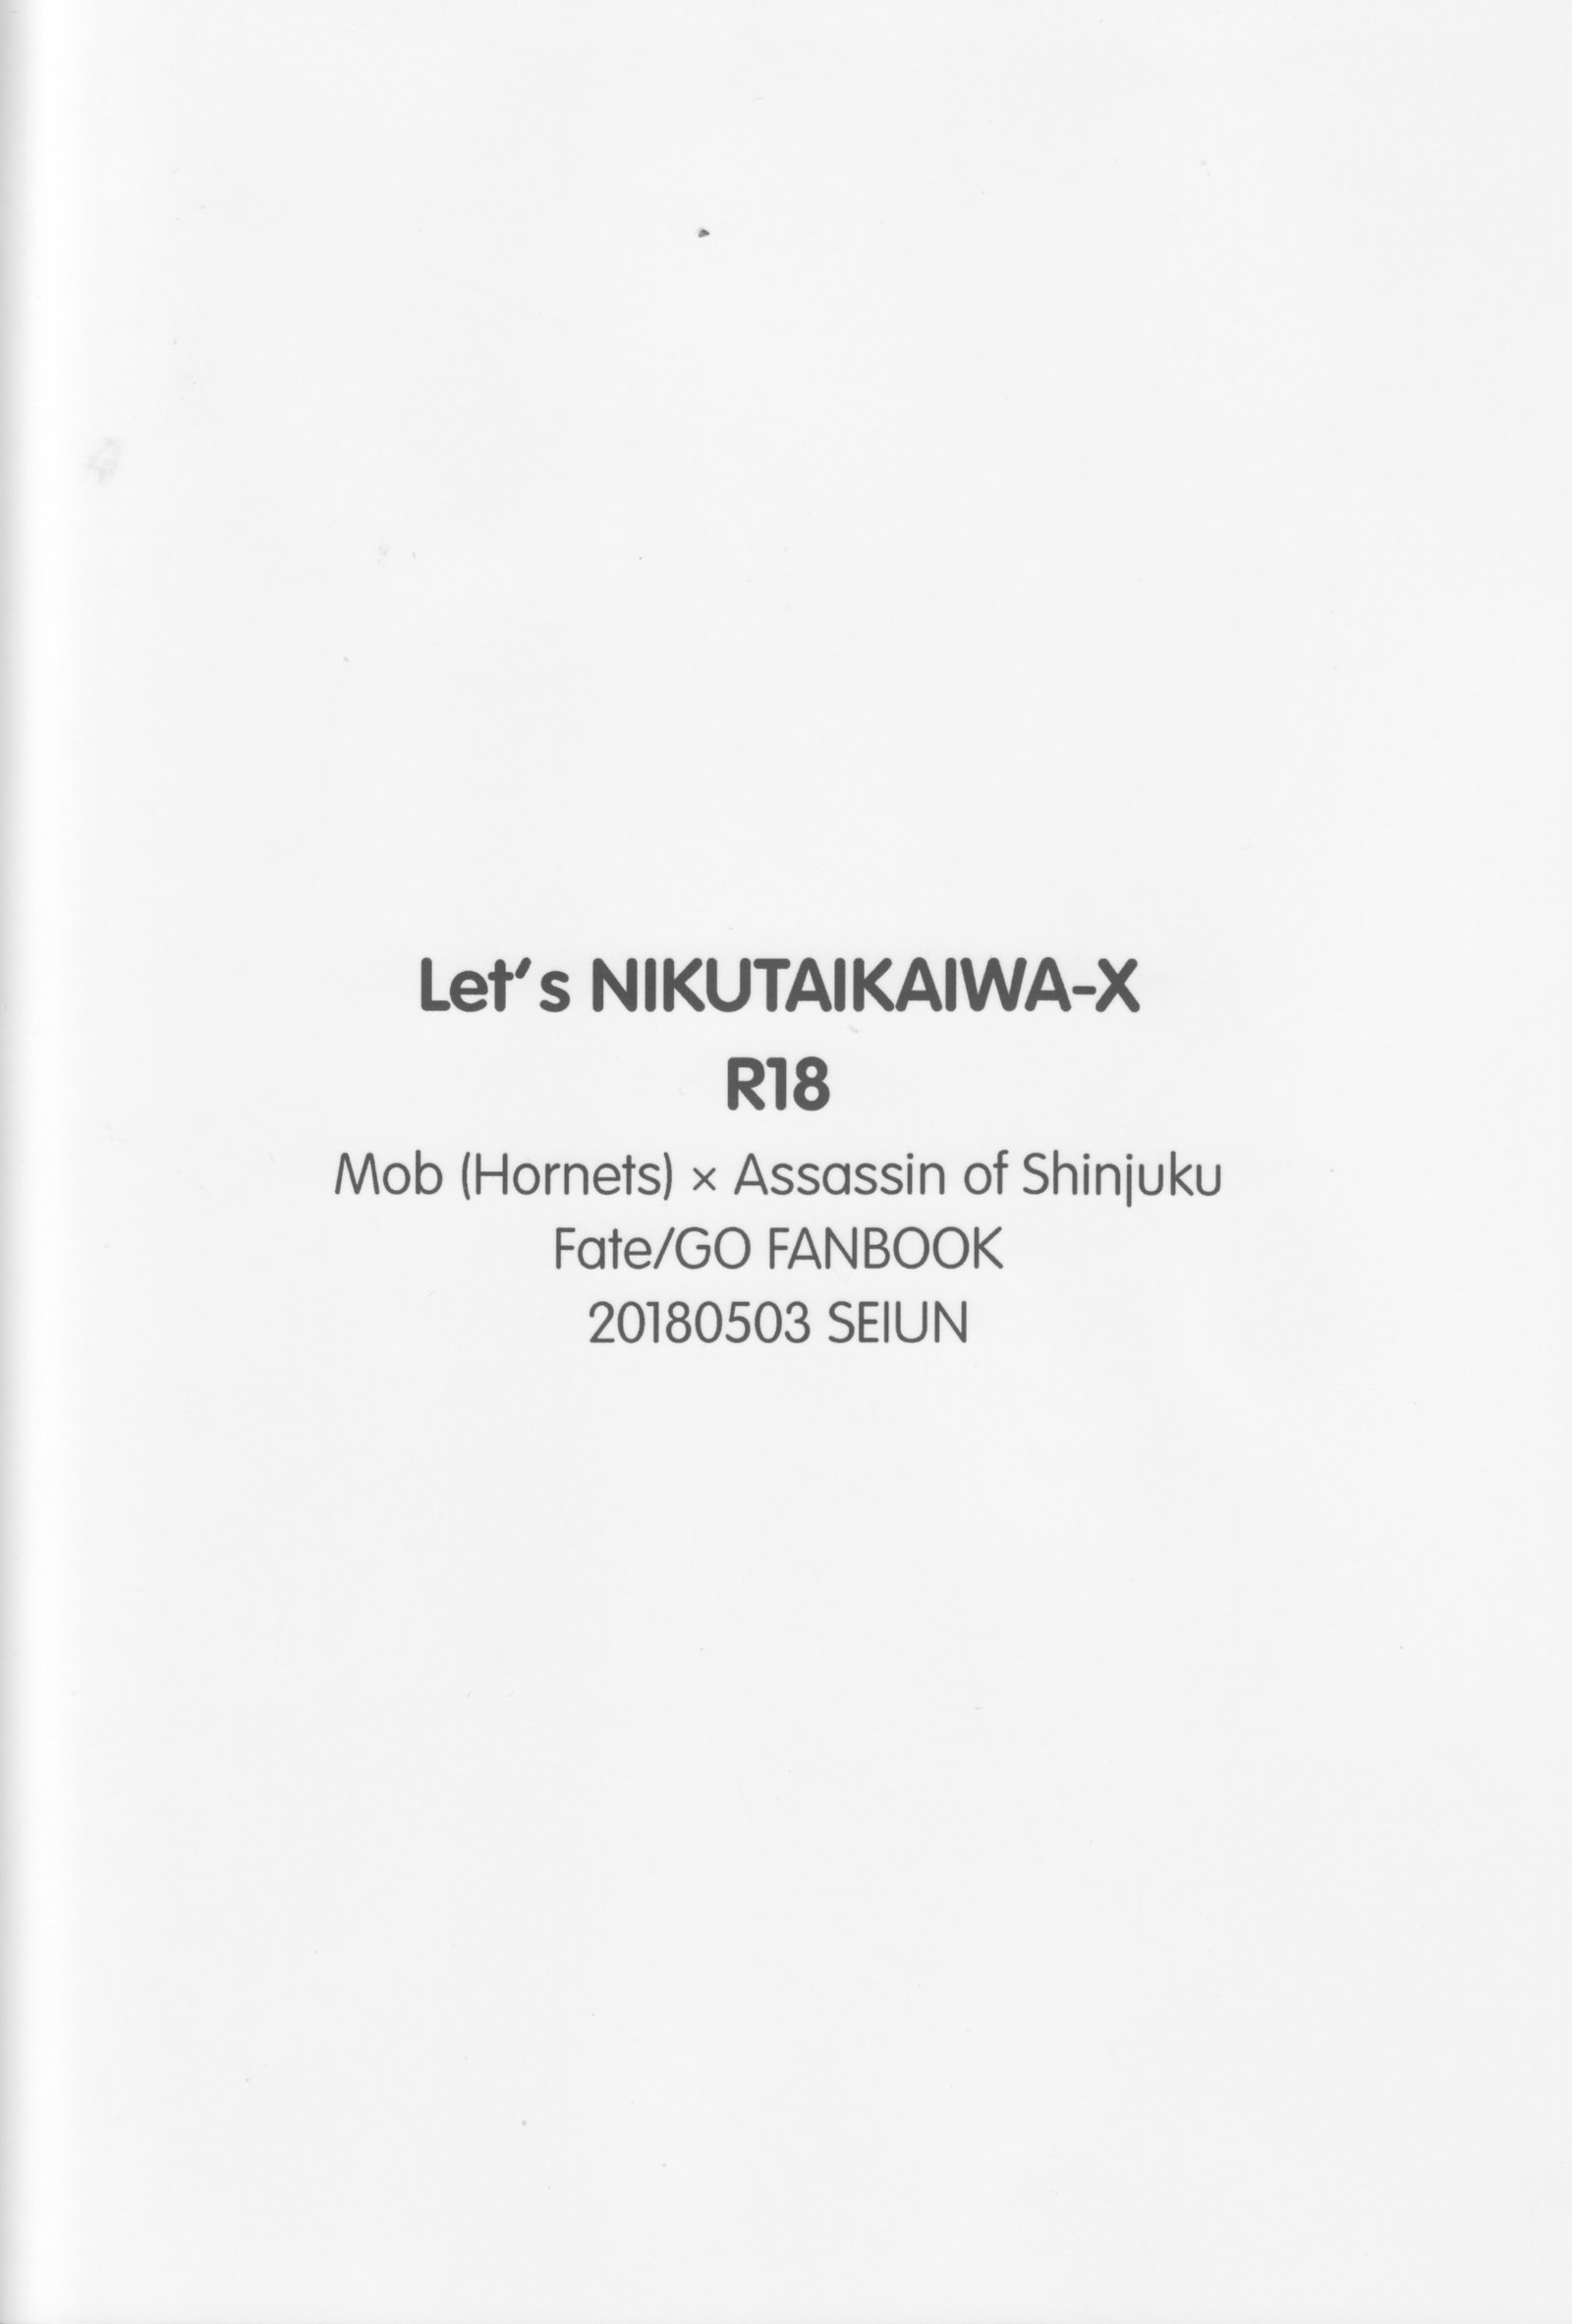 NIKUTAIKAIWA-Xをしましょう